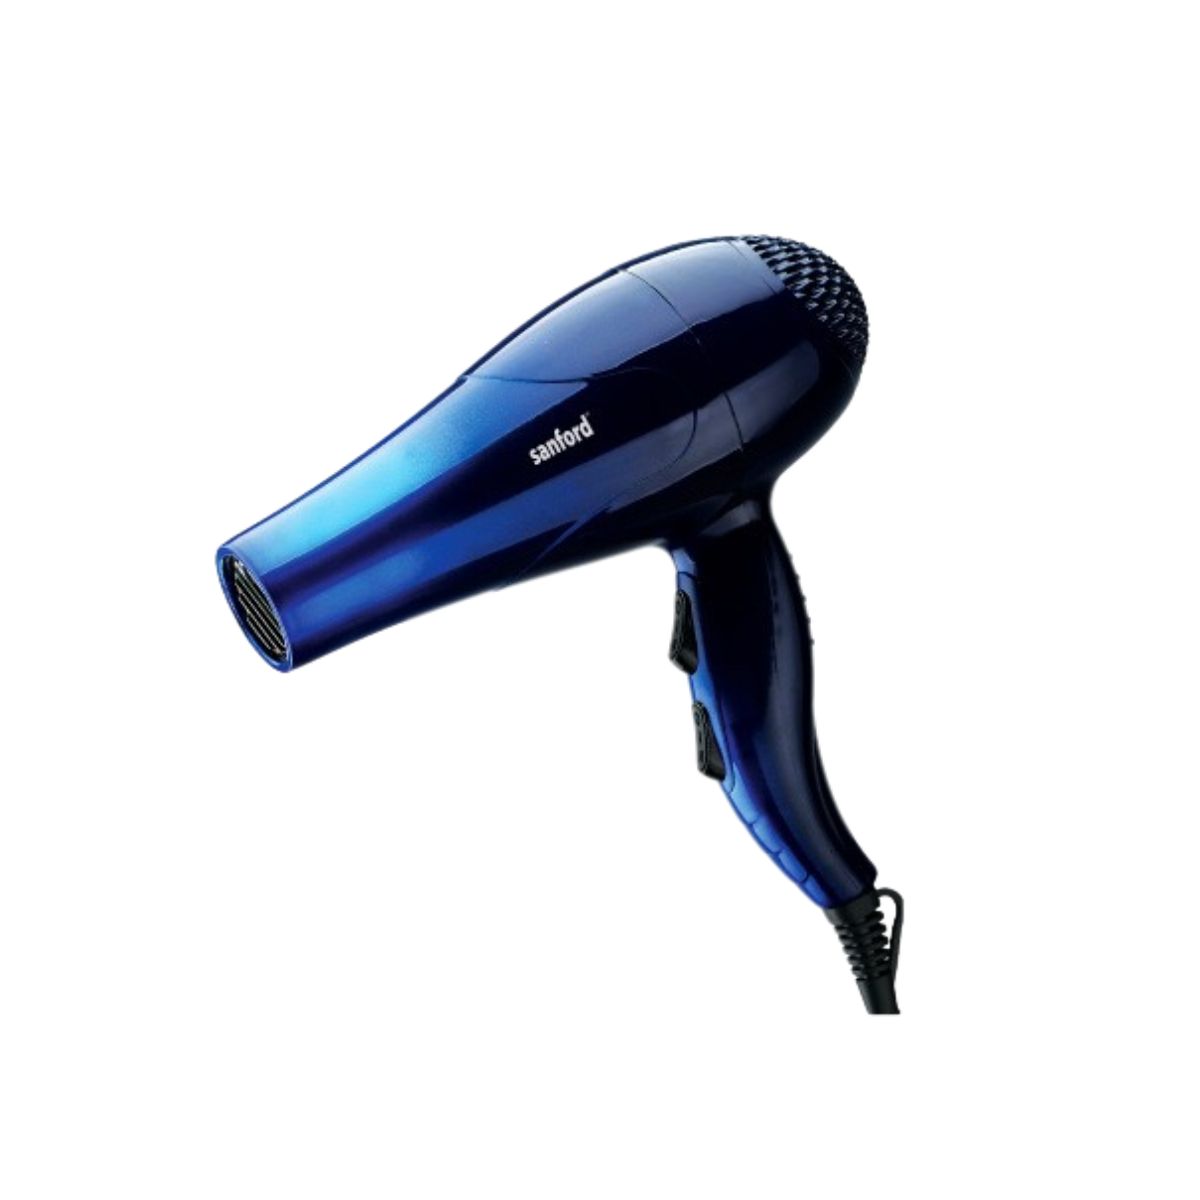 Sanford Hair Dryer - SF984HD - Blue